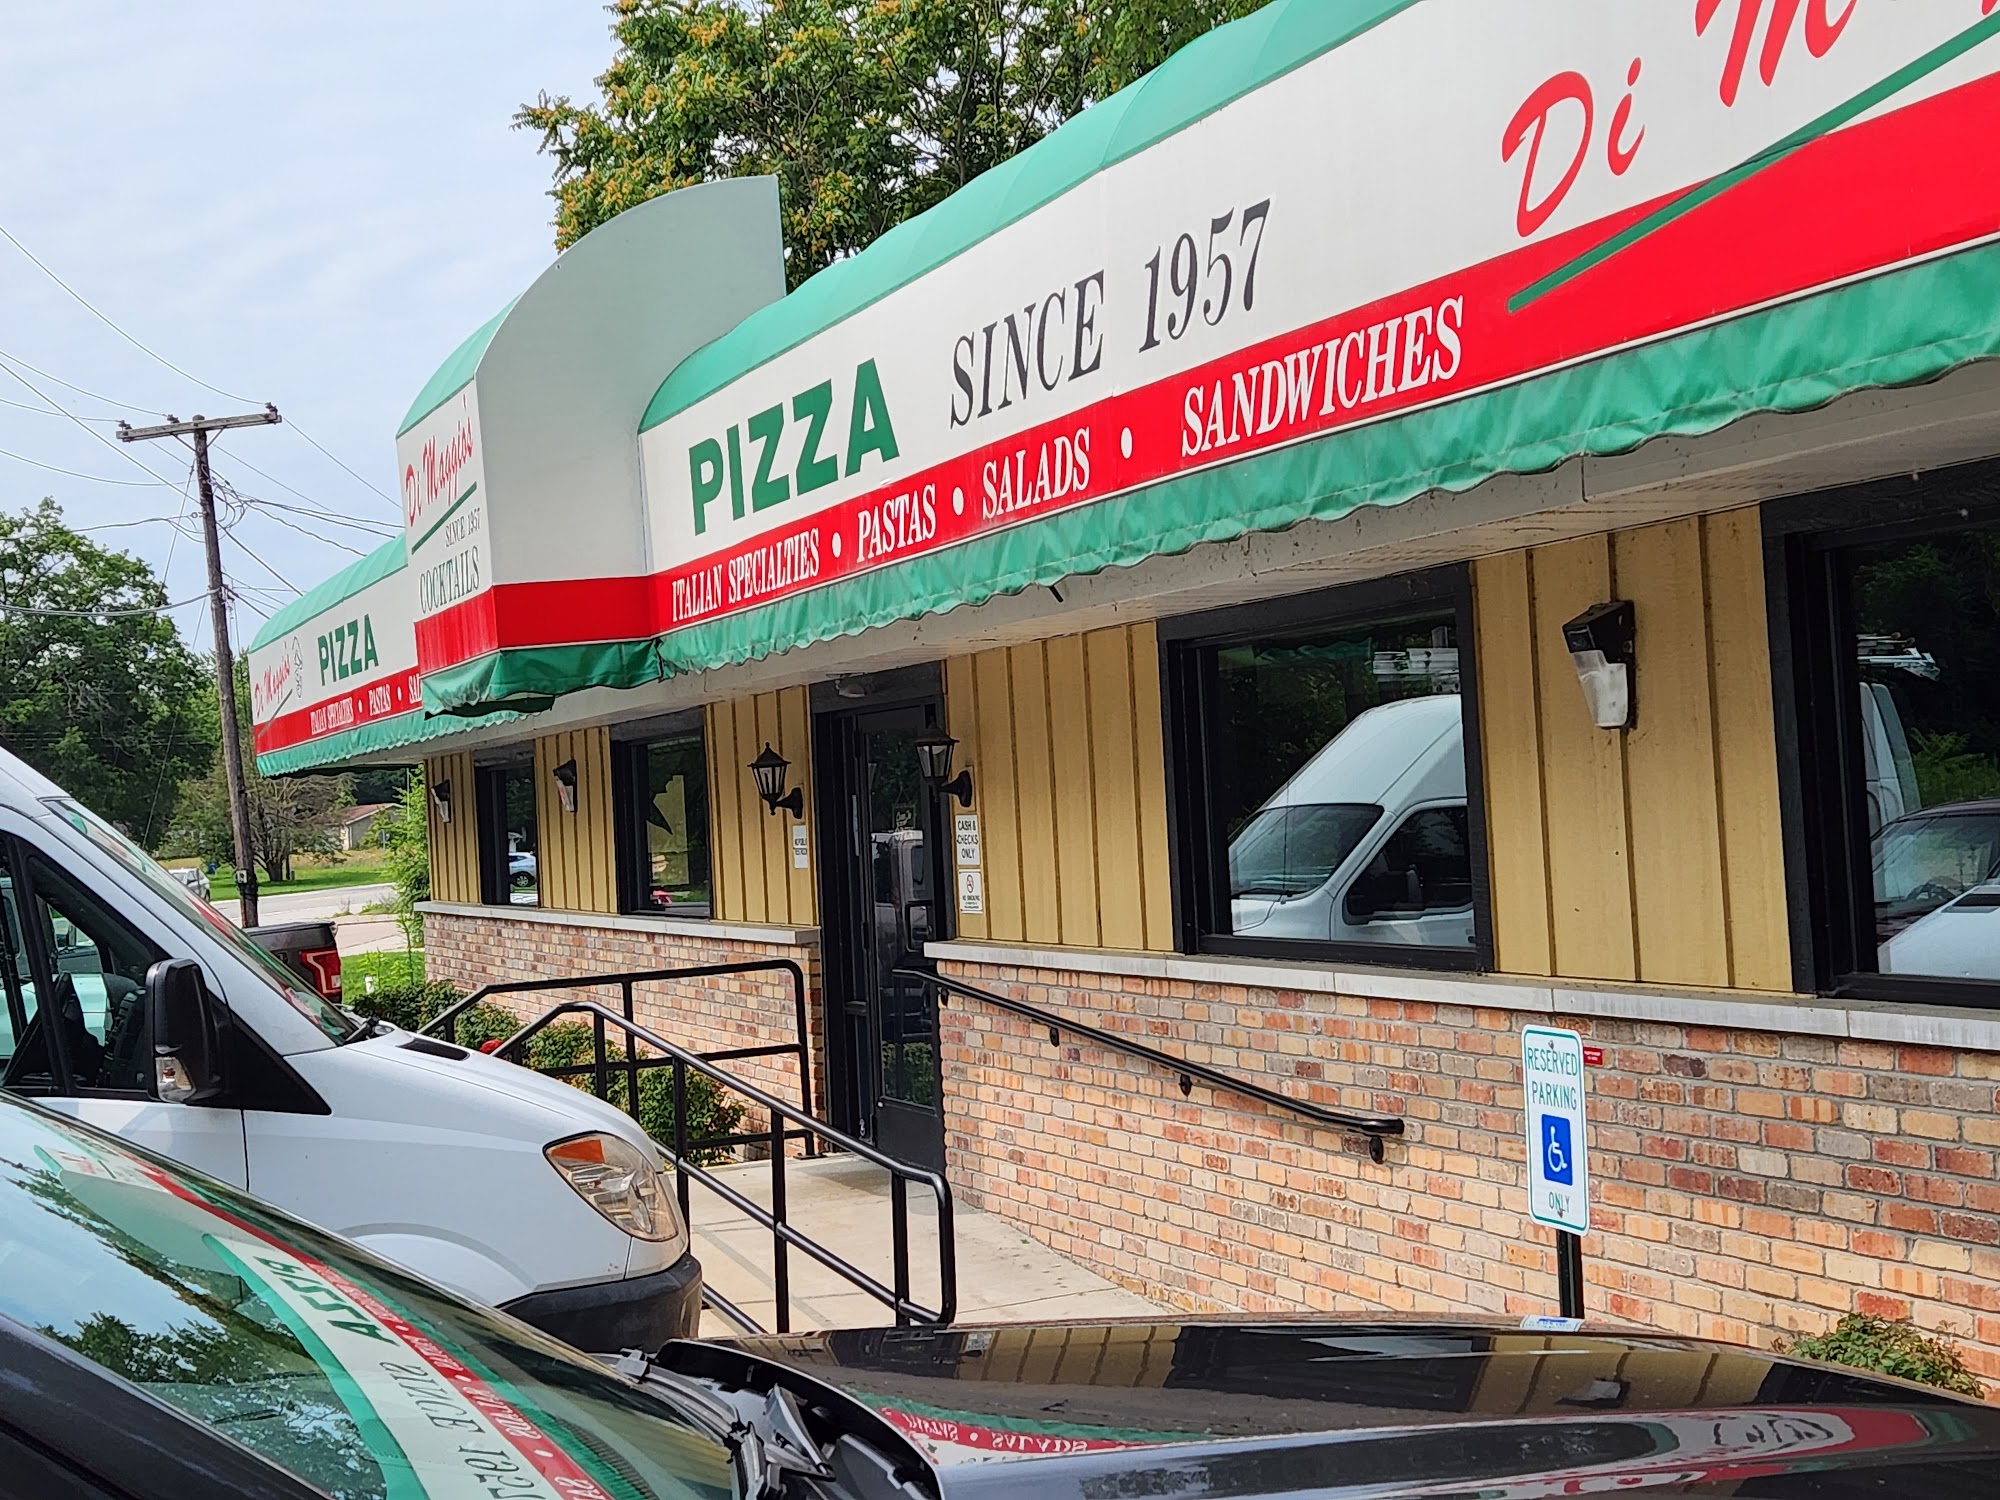 DiMaggio's Pizza and Burgers